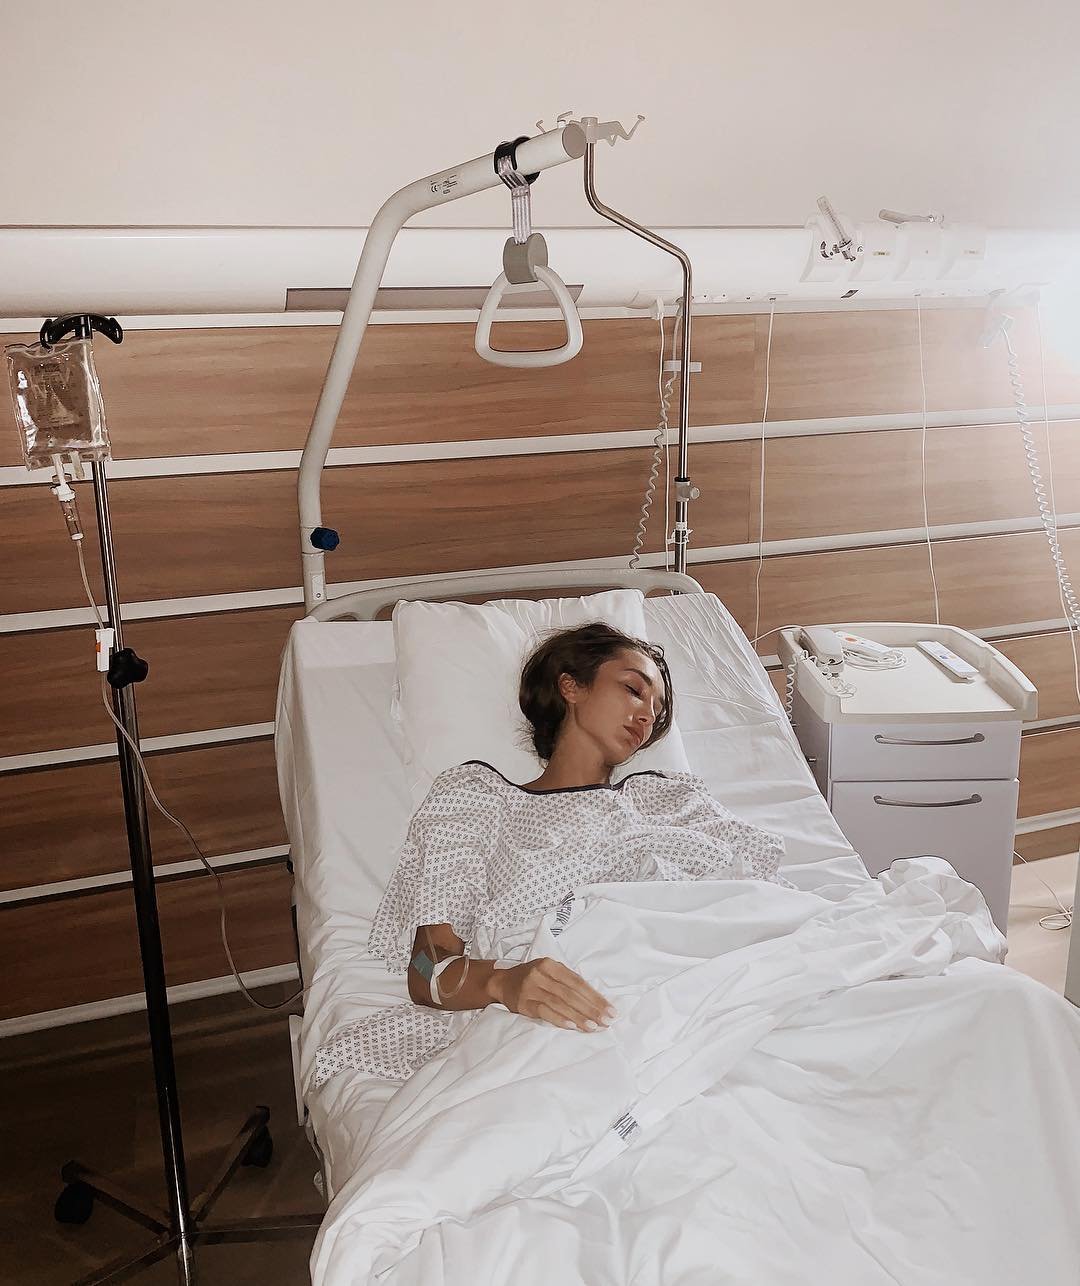 Фото девушки на больничной койке без лица